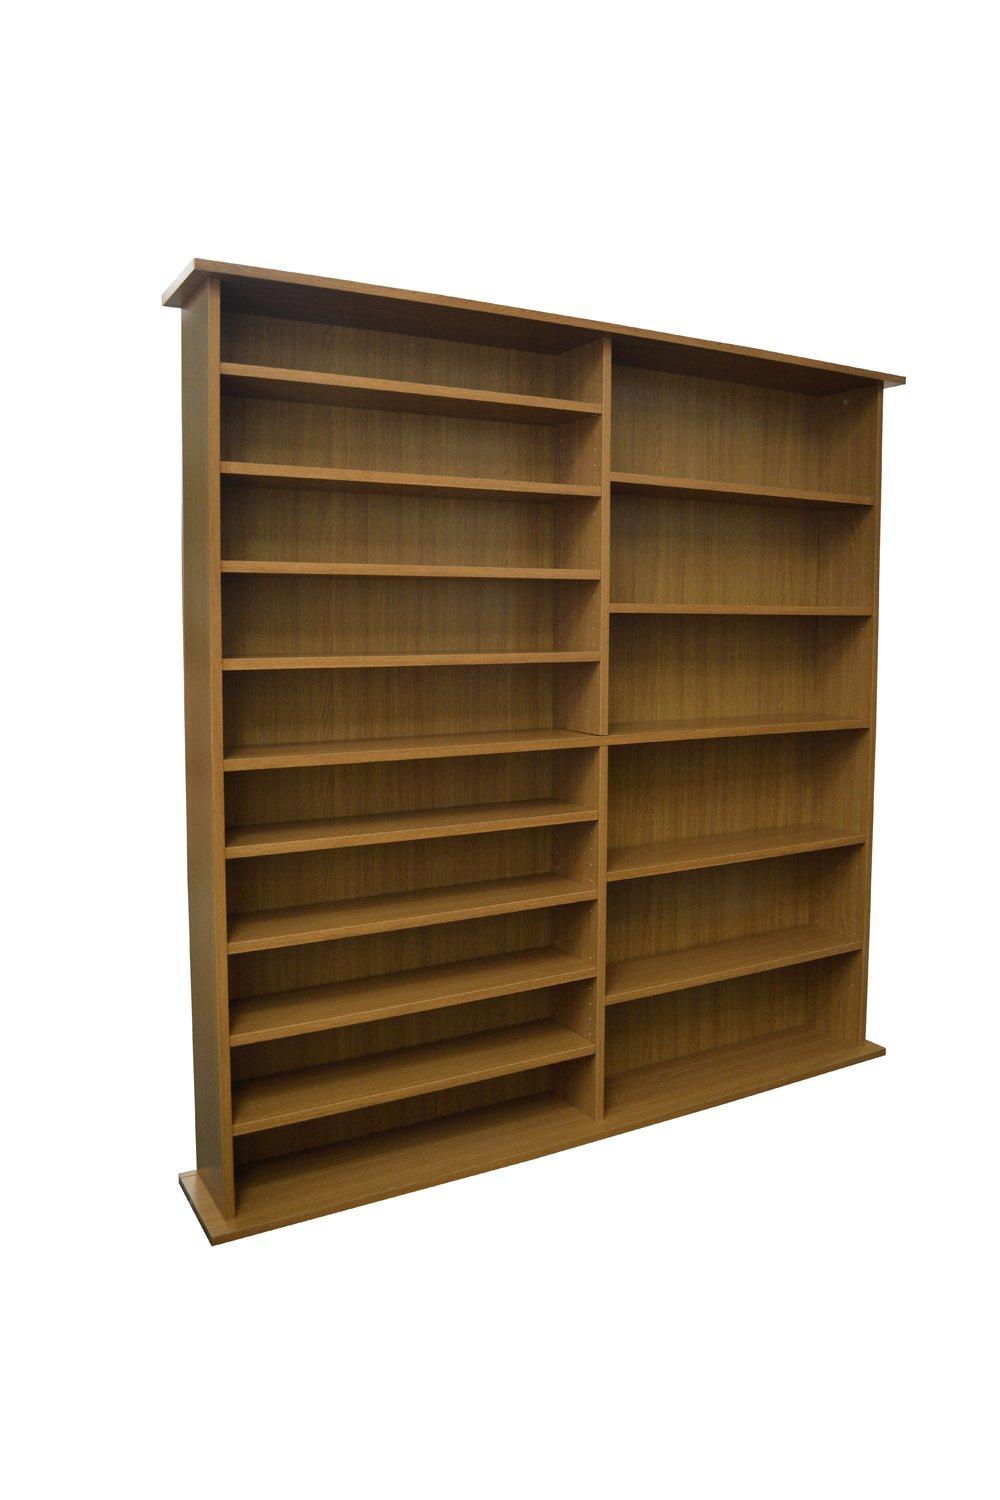 'Extra' - 1300 Cd / 552 Dvd / Large Media Book Storage Shelves - Oak